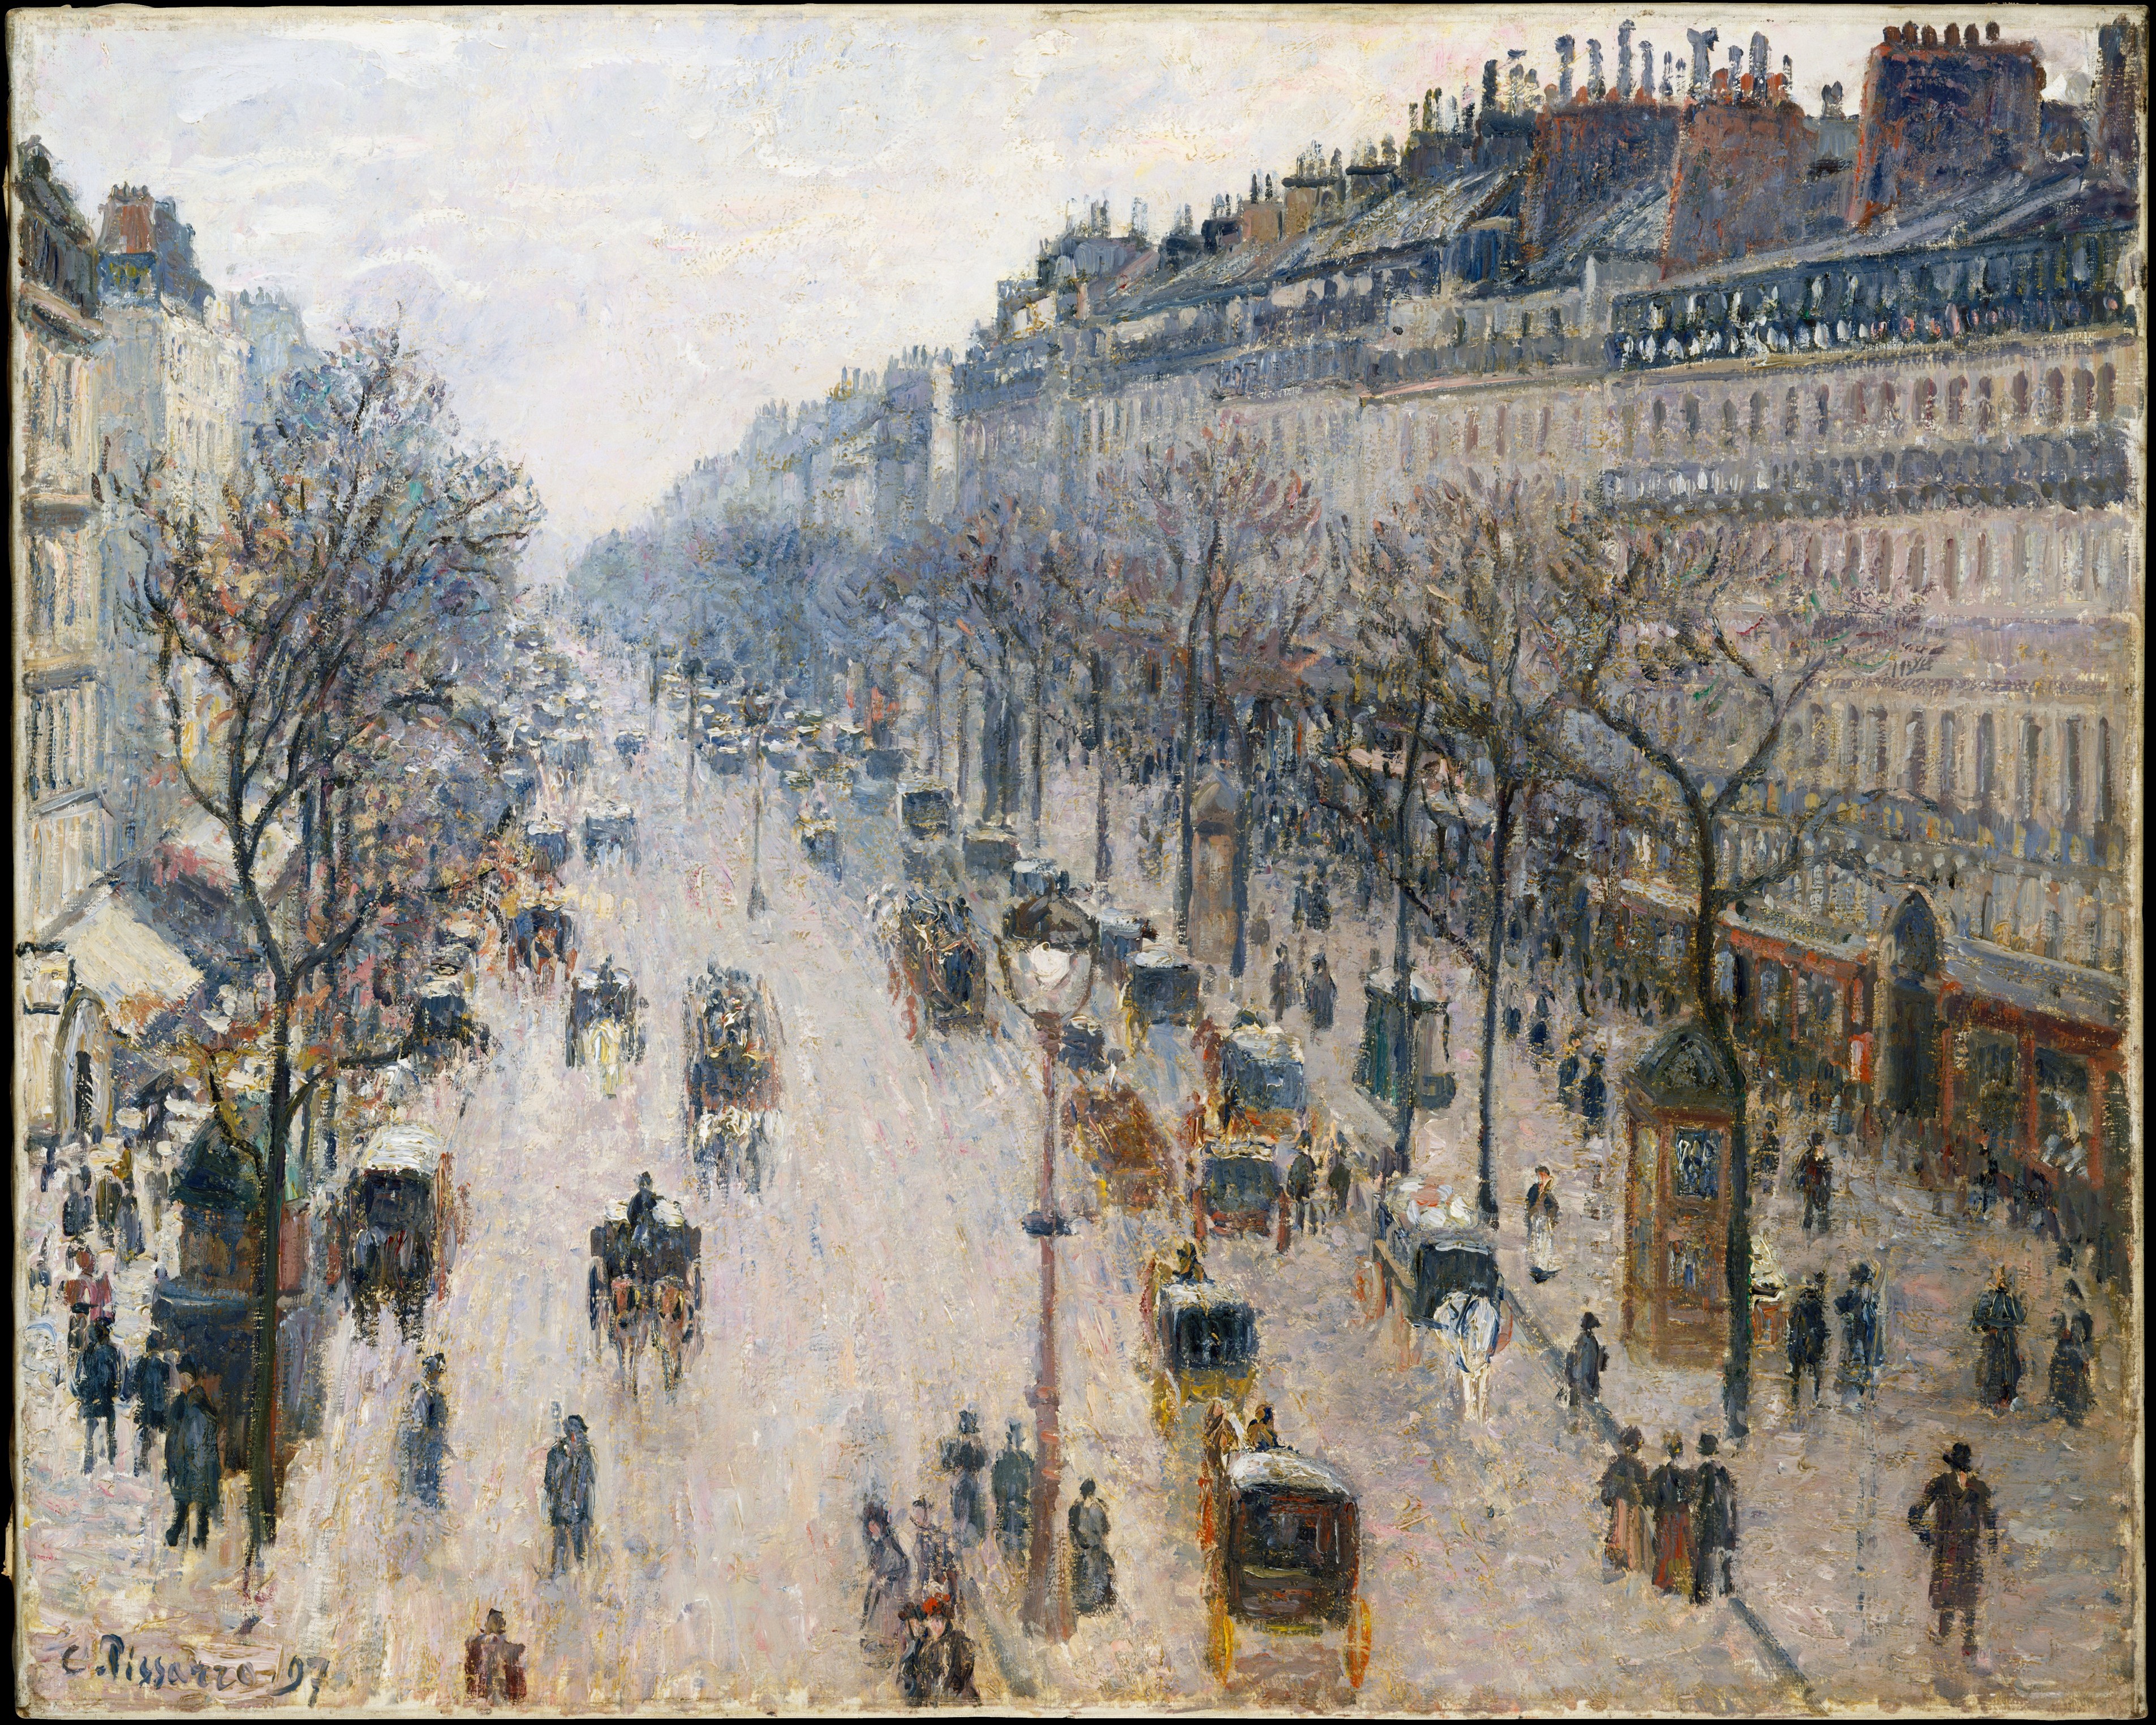 Boulevard Montmartre, una mañana de invierno by Camille Pissarro - 1897 - 64.8 x 81.3 cm Museo Metropolitano de Arte